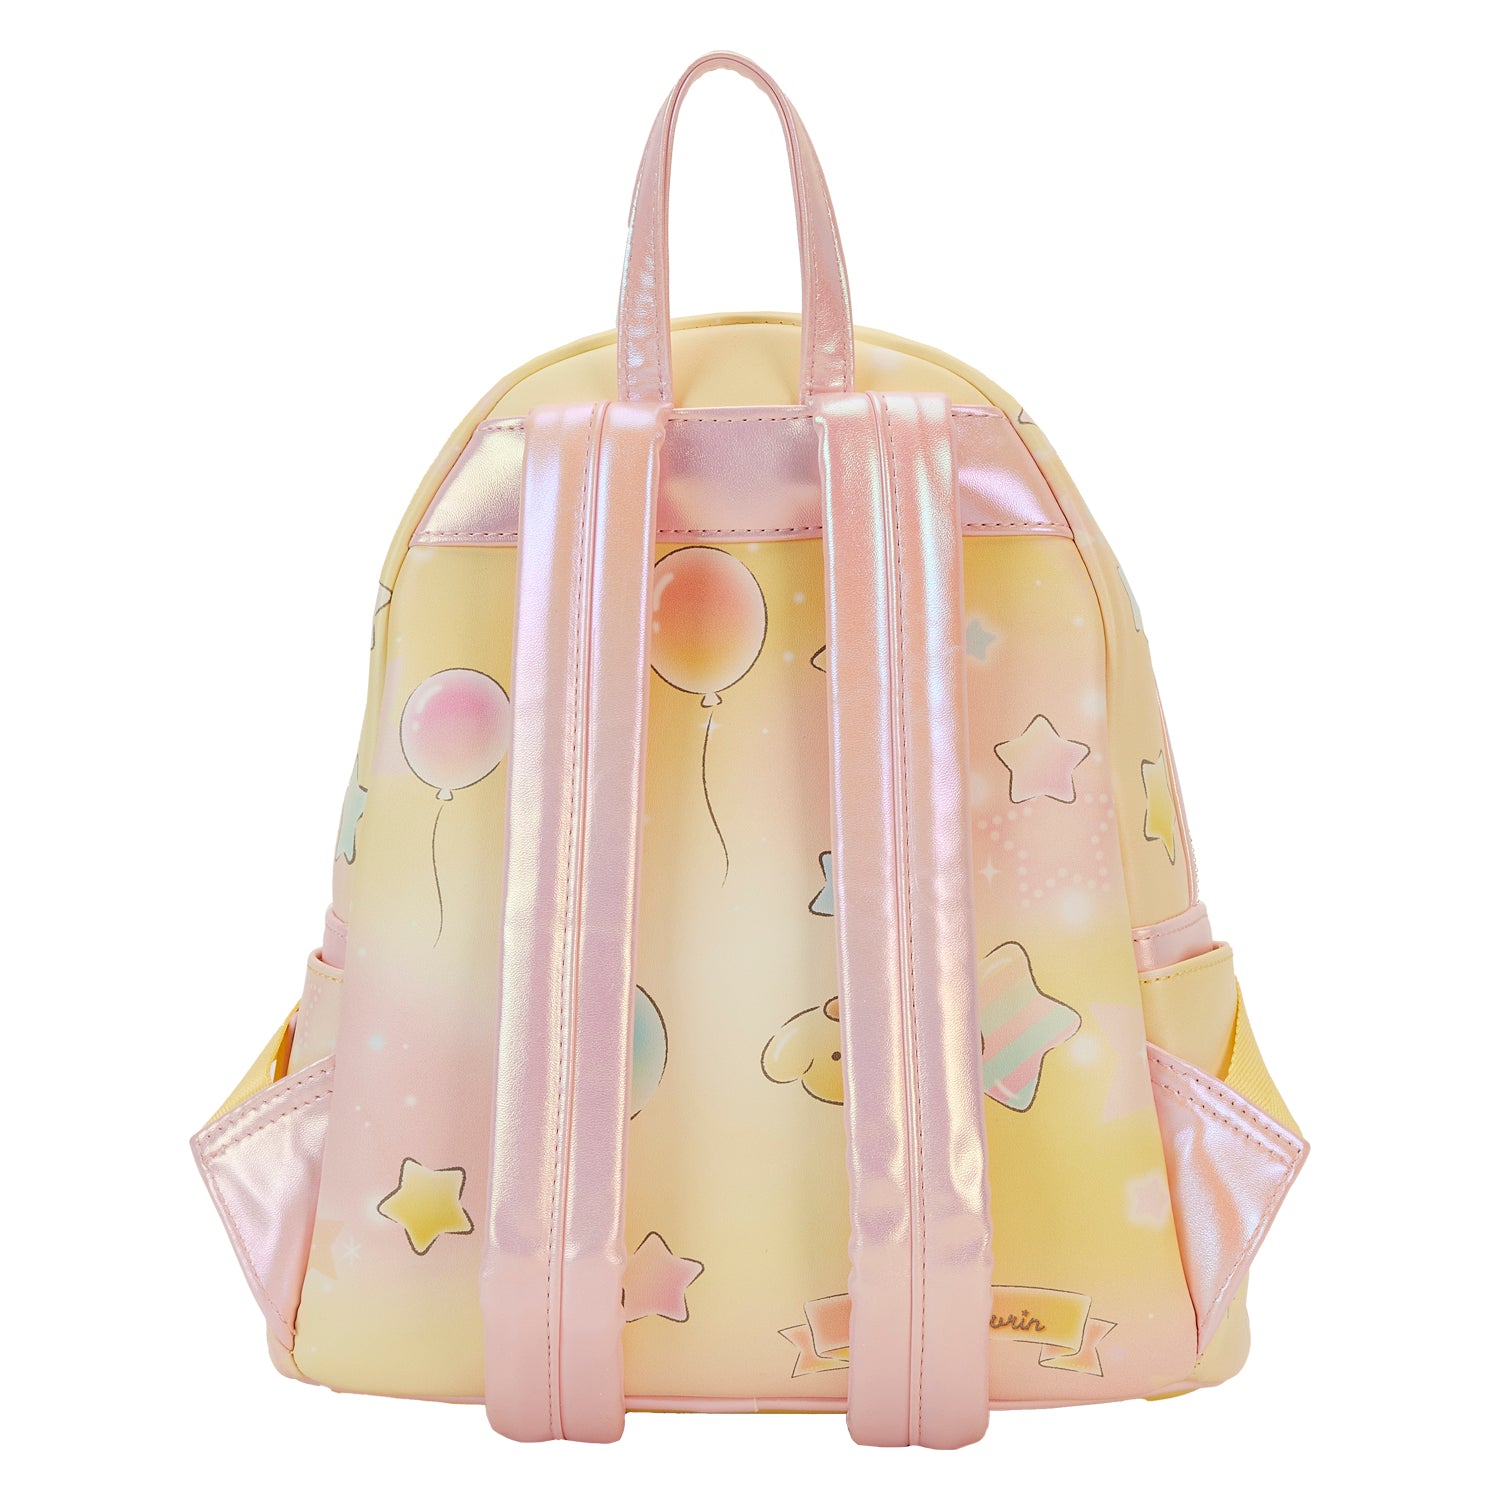 Sanrio | Pompompurin Carnival Mini Backpack